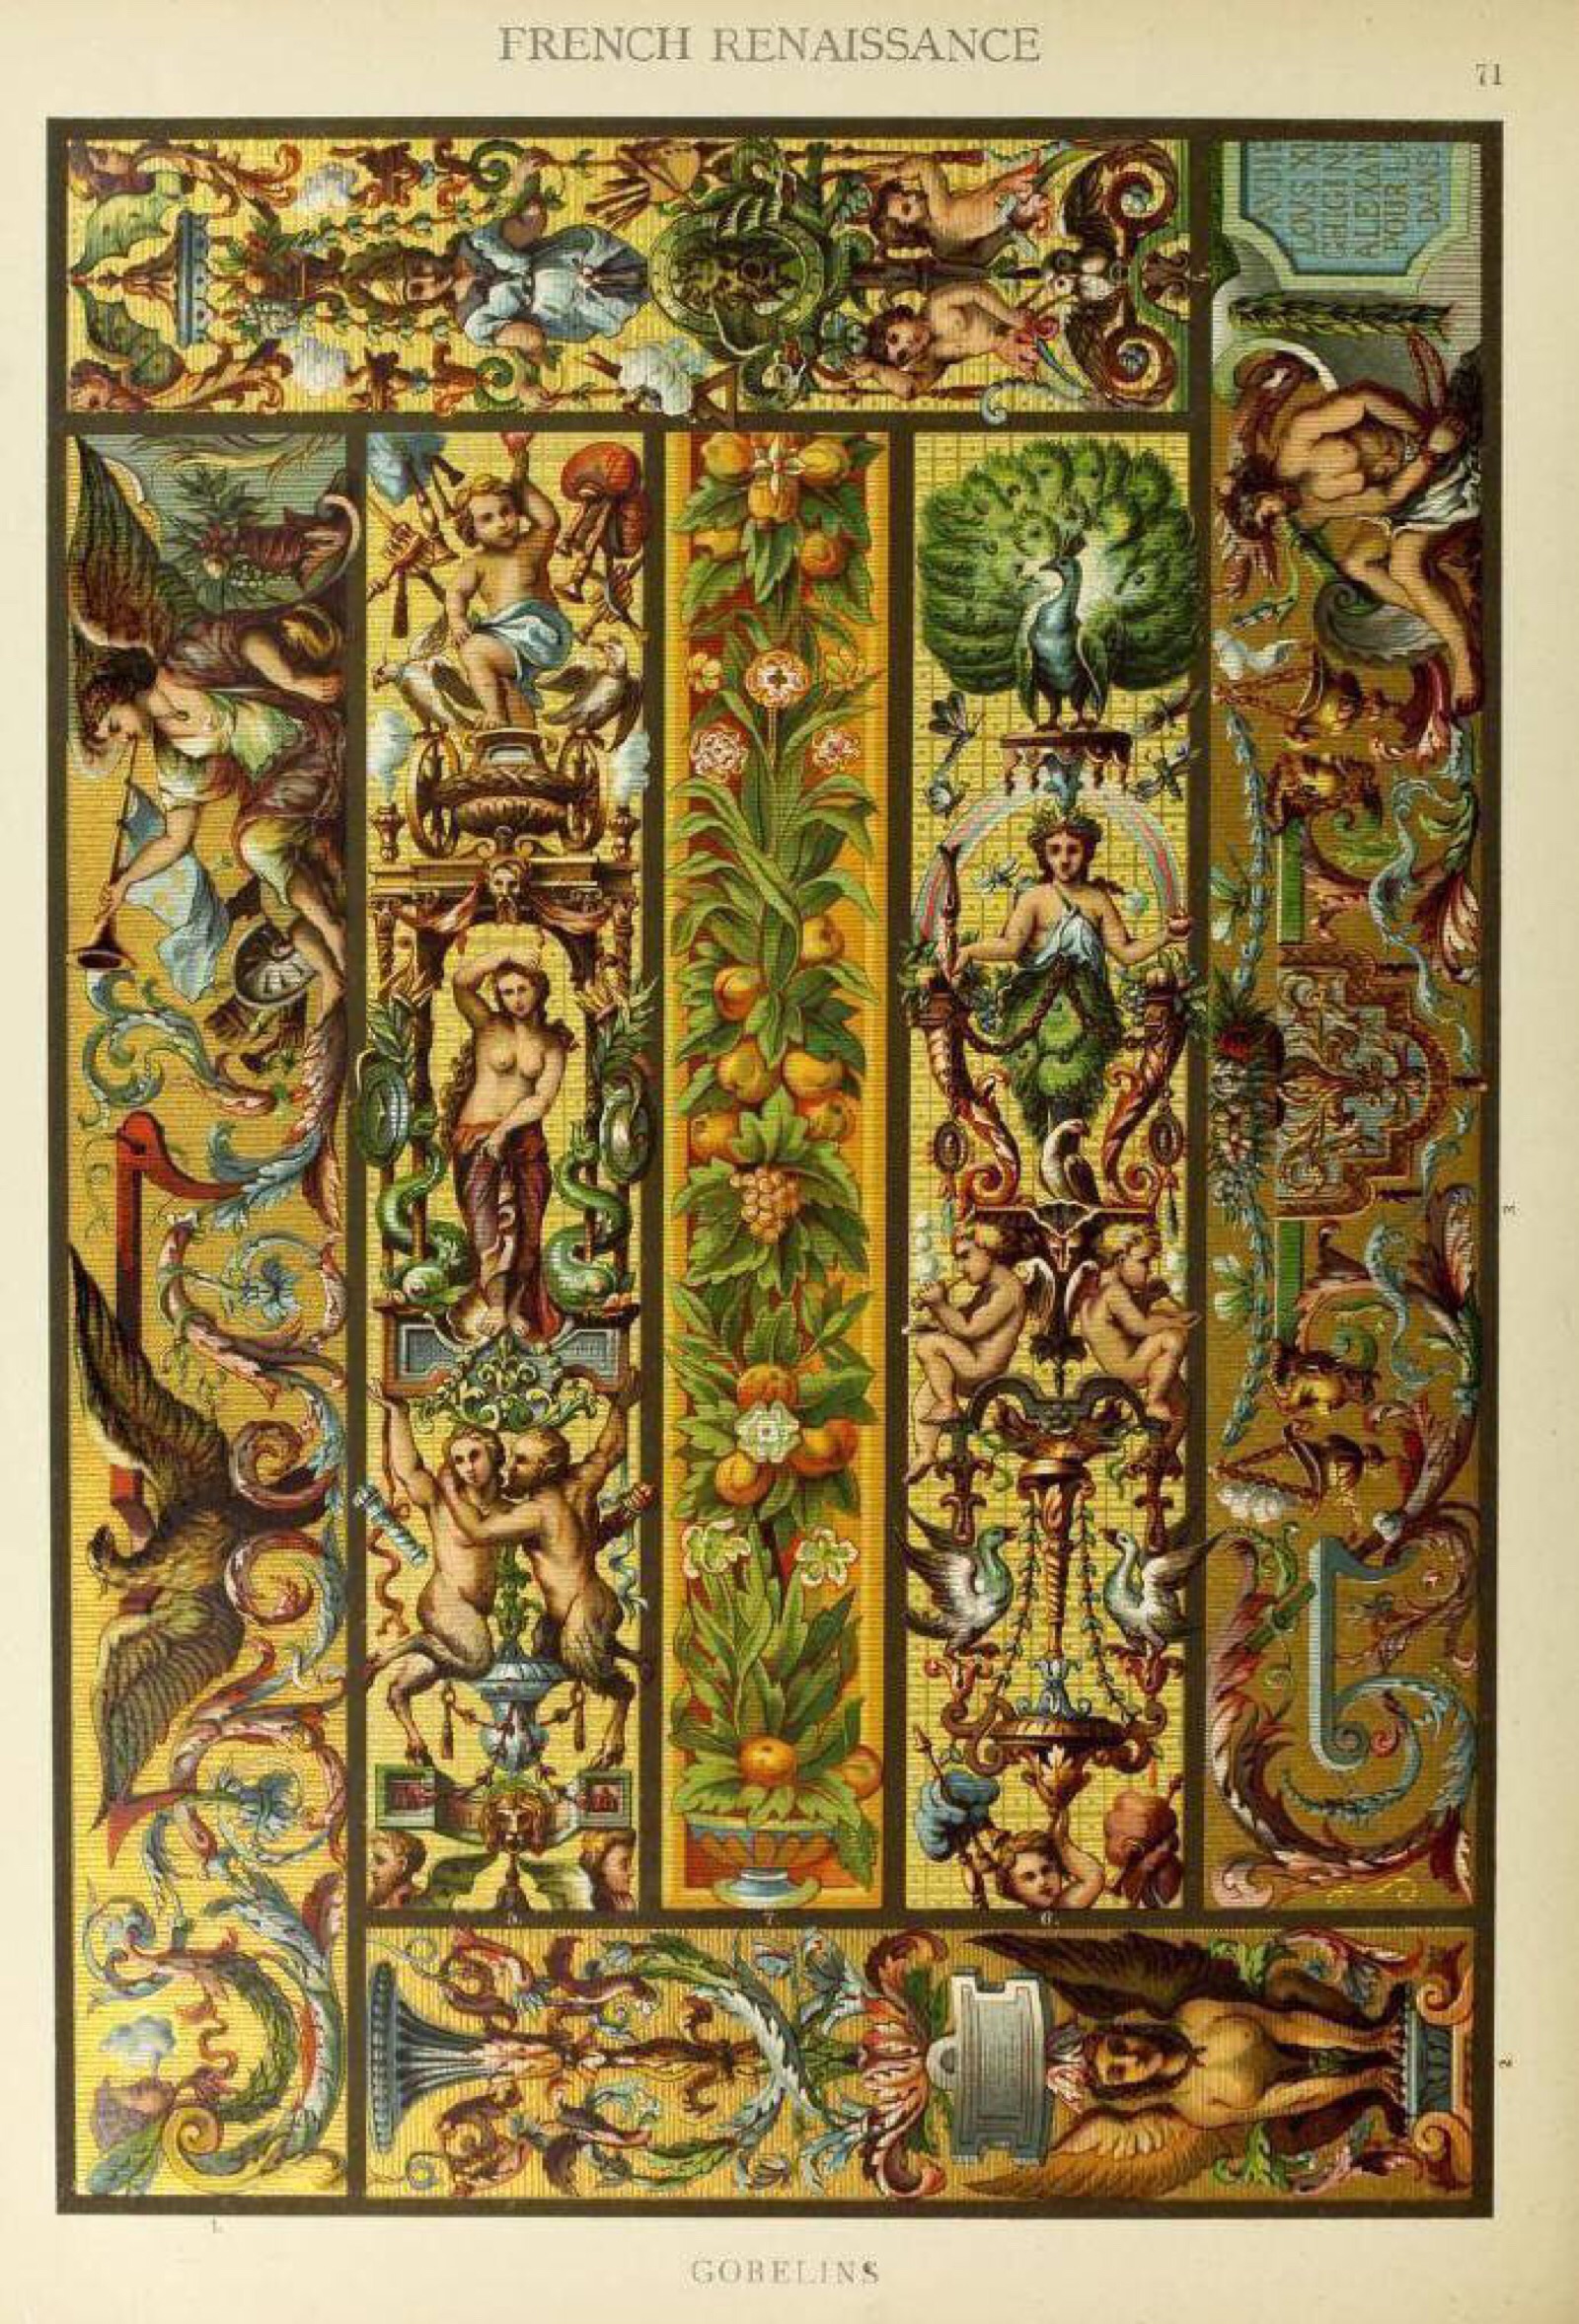 1912年出版的欧洲文艺复兴时期的装饰艺术图… - 堆糖,美图壁纸兴趣